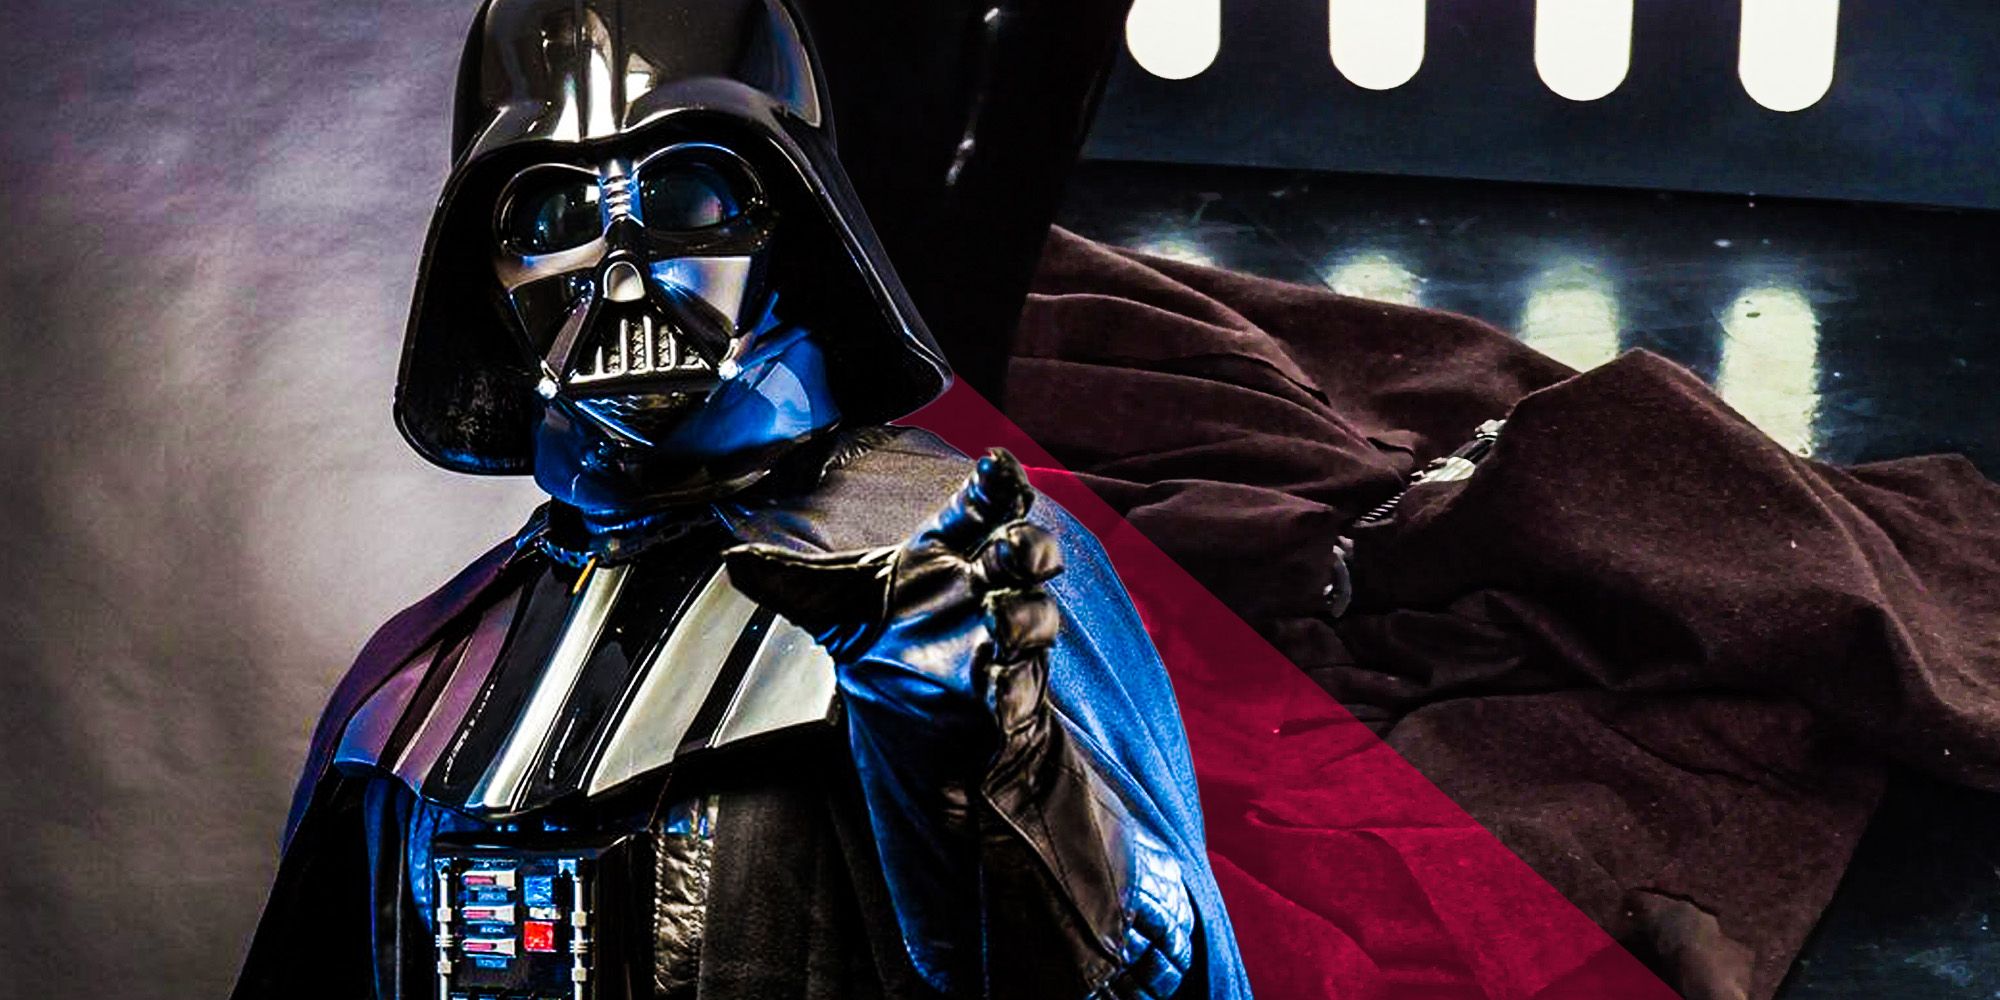 Darth Vader Obi wans lightsaber star wars a new hope duel